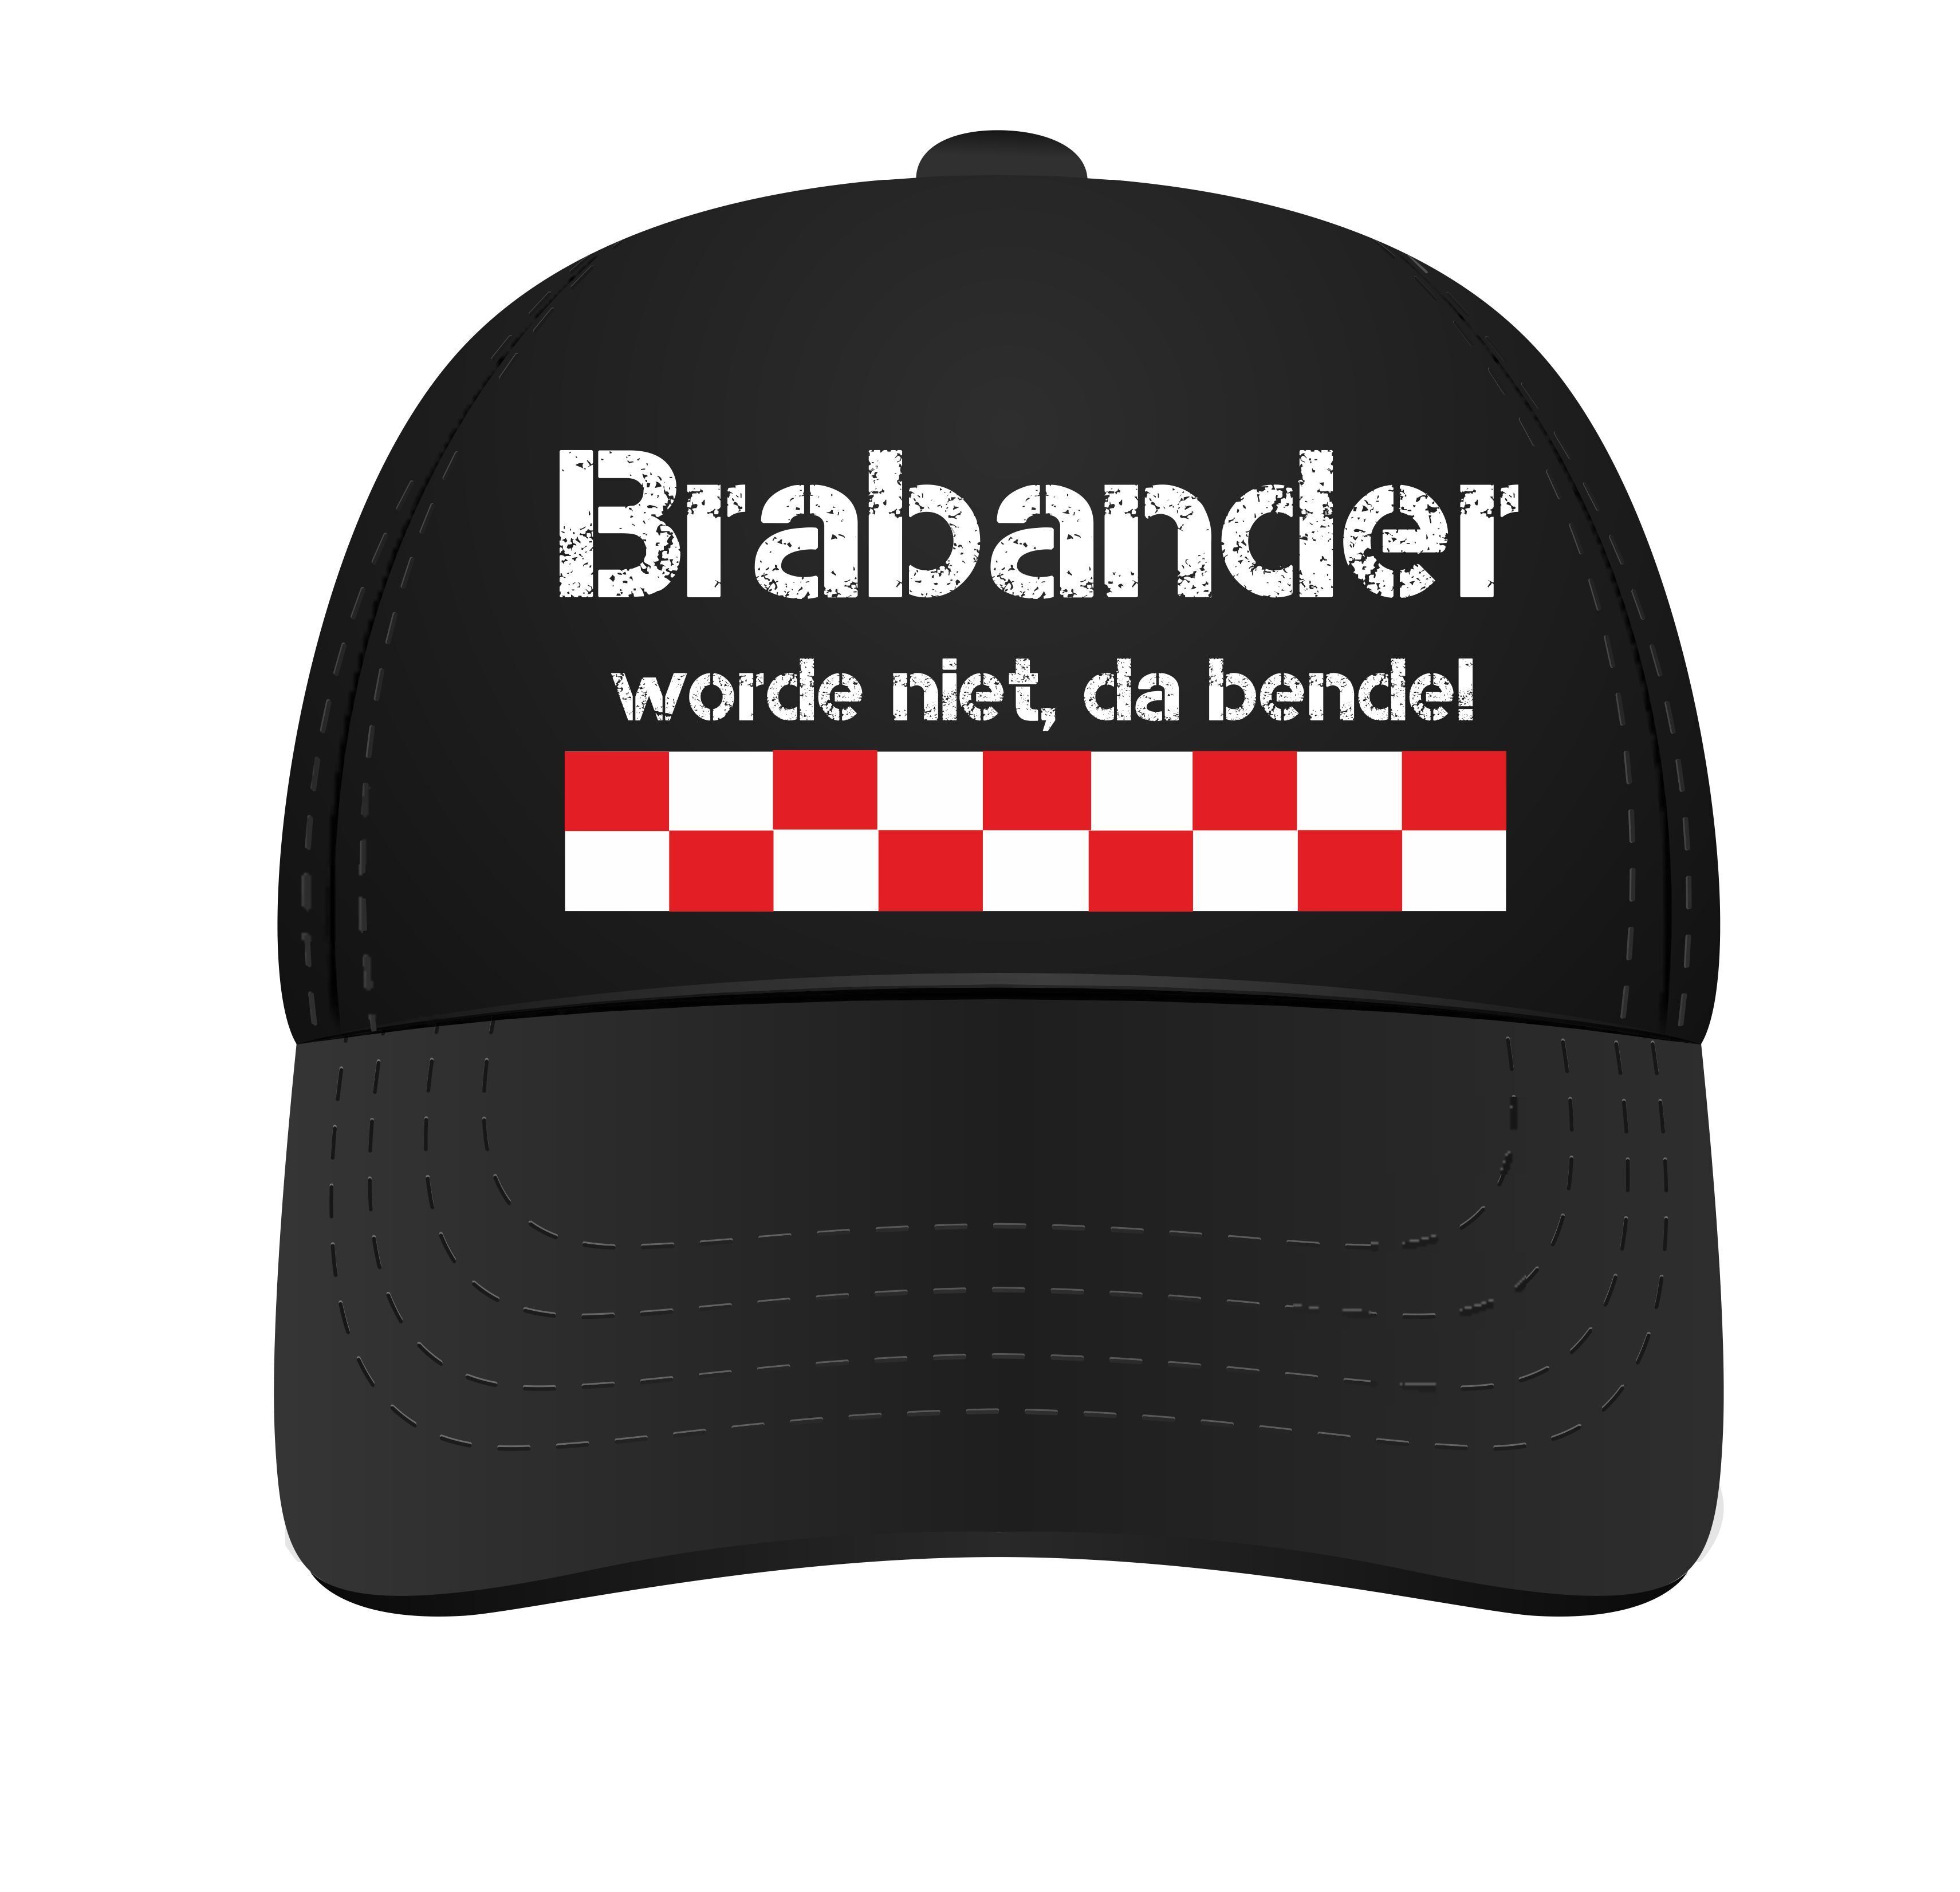 Petje Brabant Brabander worde niet, da bende!